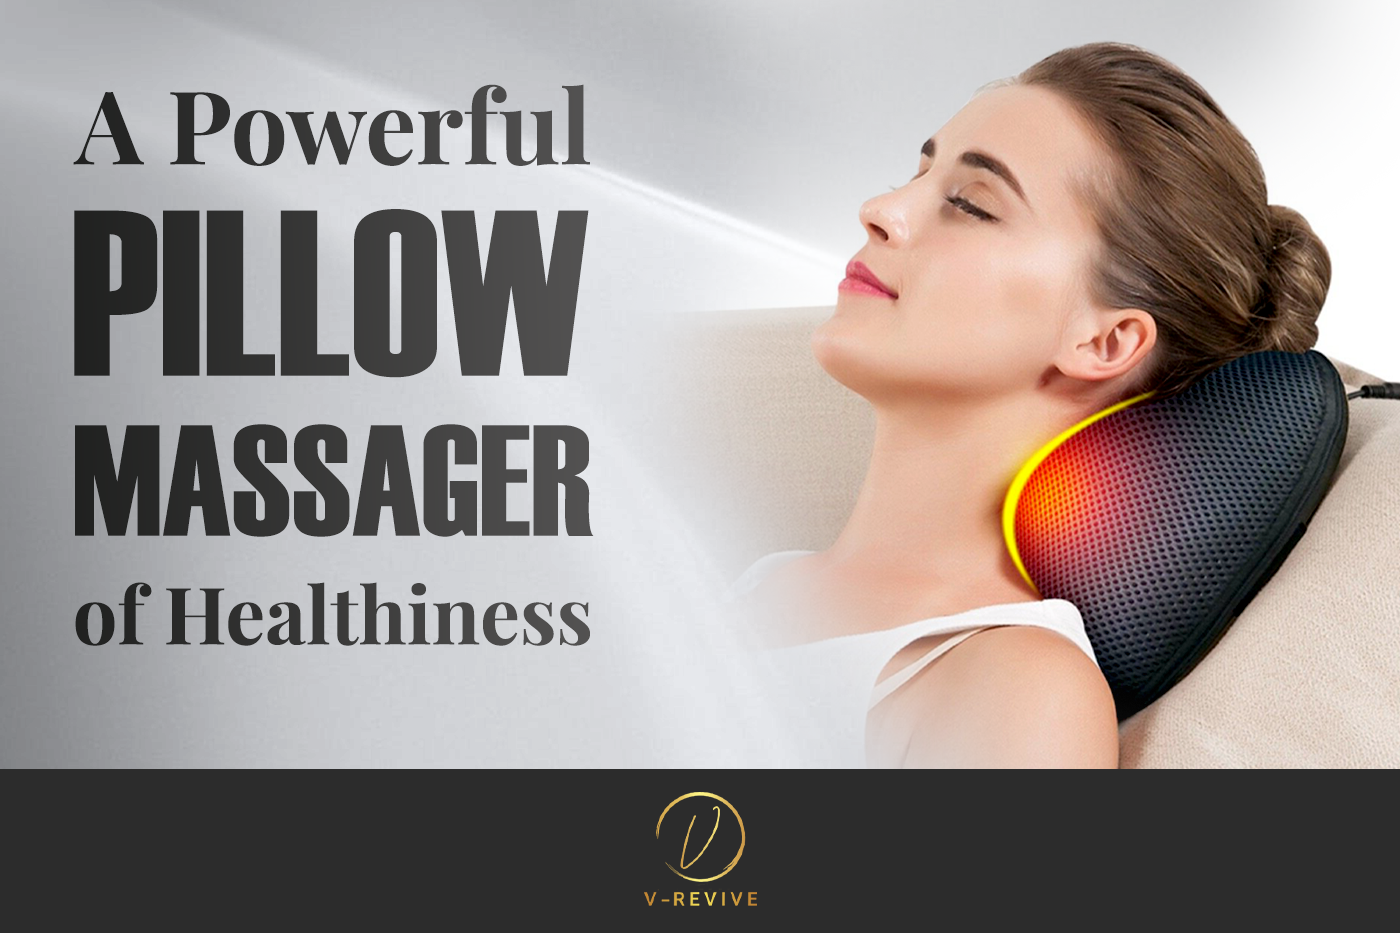 pillow-massager